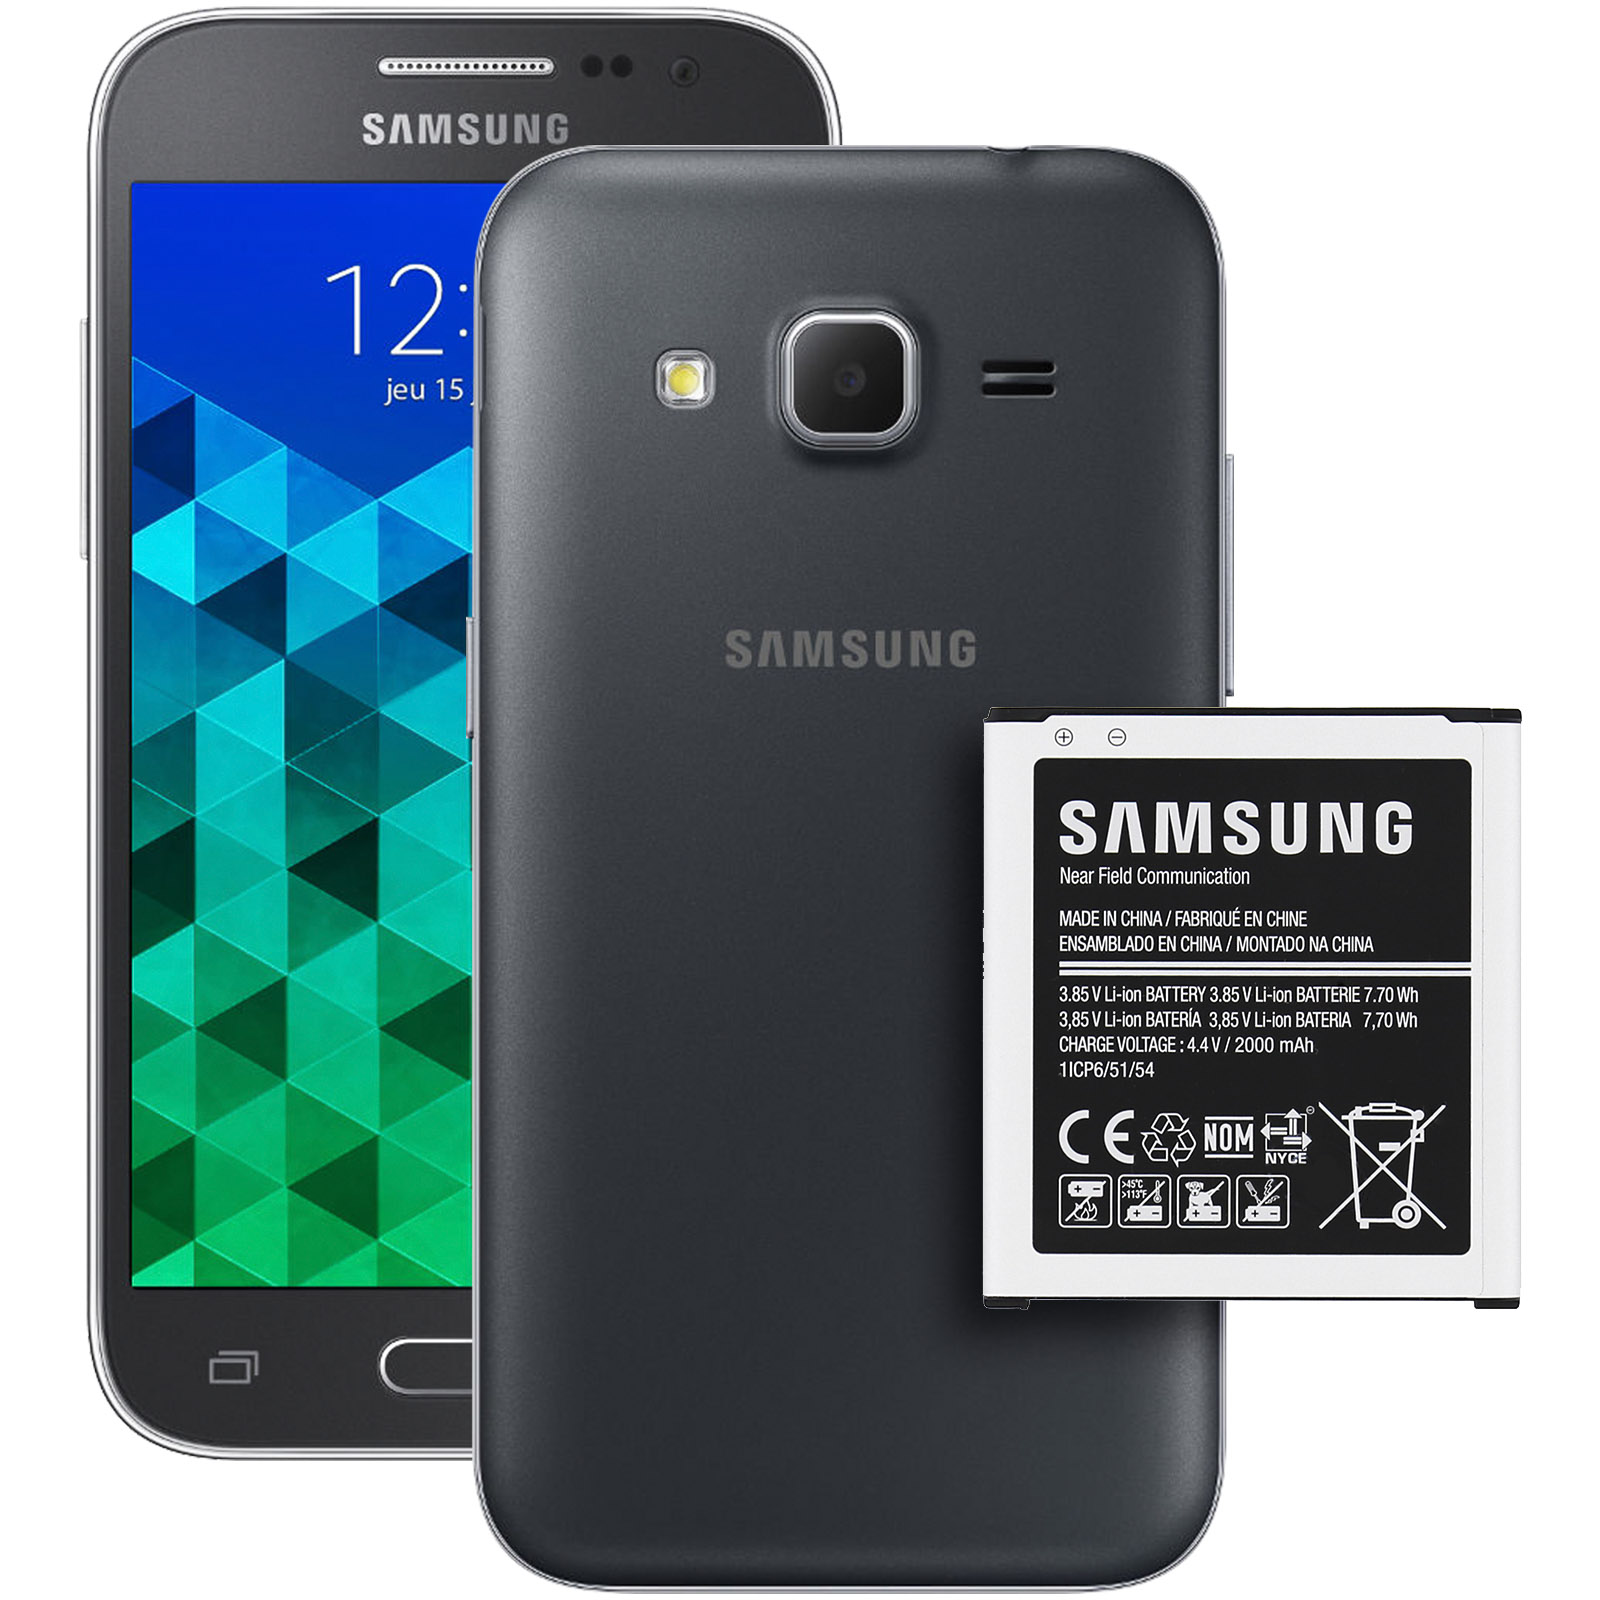 SAMSUNG Handy Akku Akkus Core 2000Mah G360 Eb-Bg360 Prime EB-BG360BBE Galaxy Original Samsung G361F